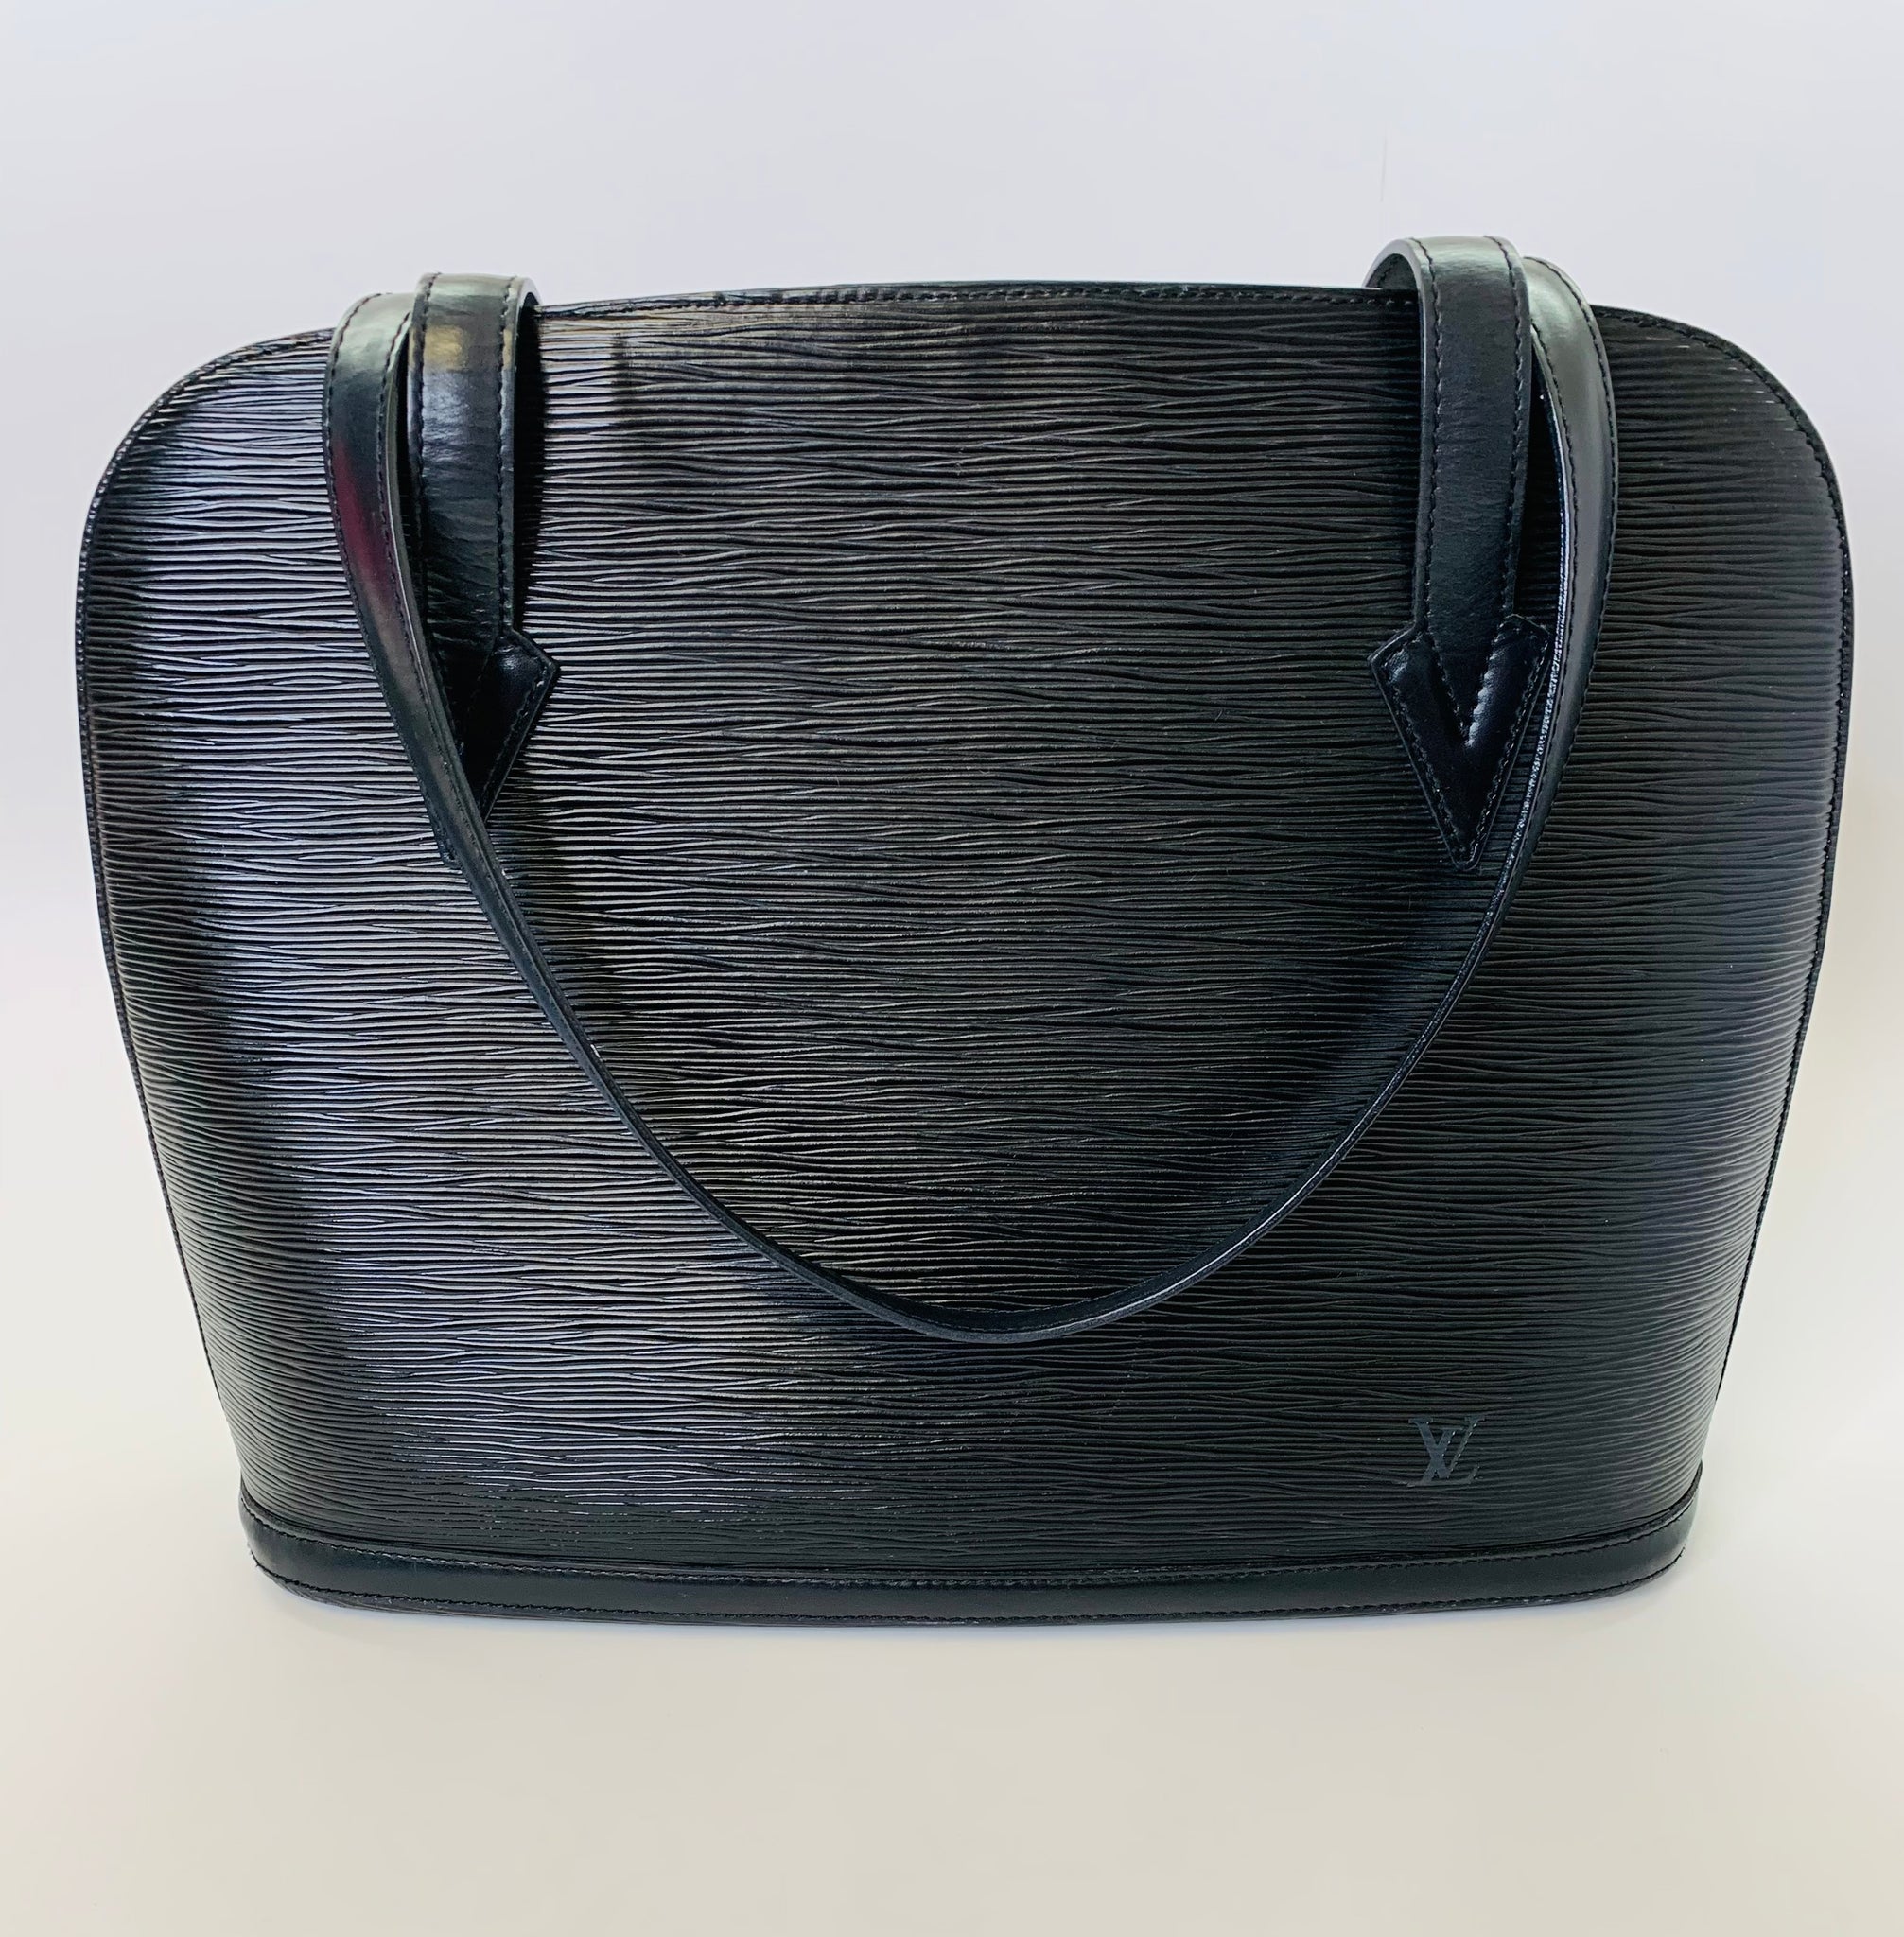 Louis Vuitton Lussac Epi Leather Shopper on SALE